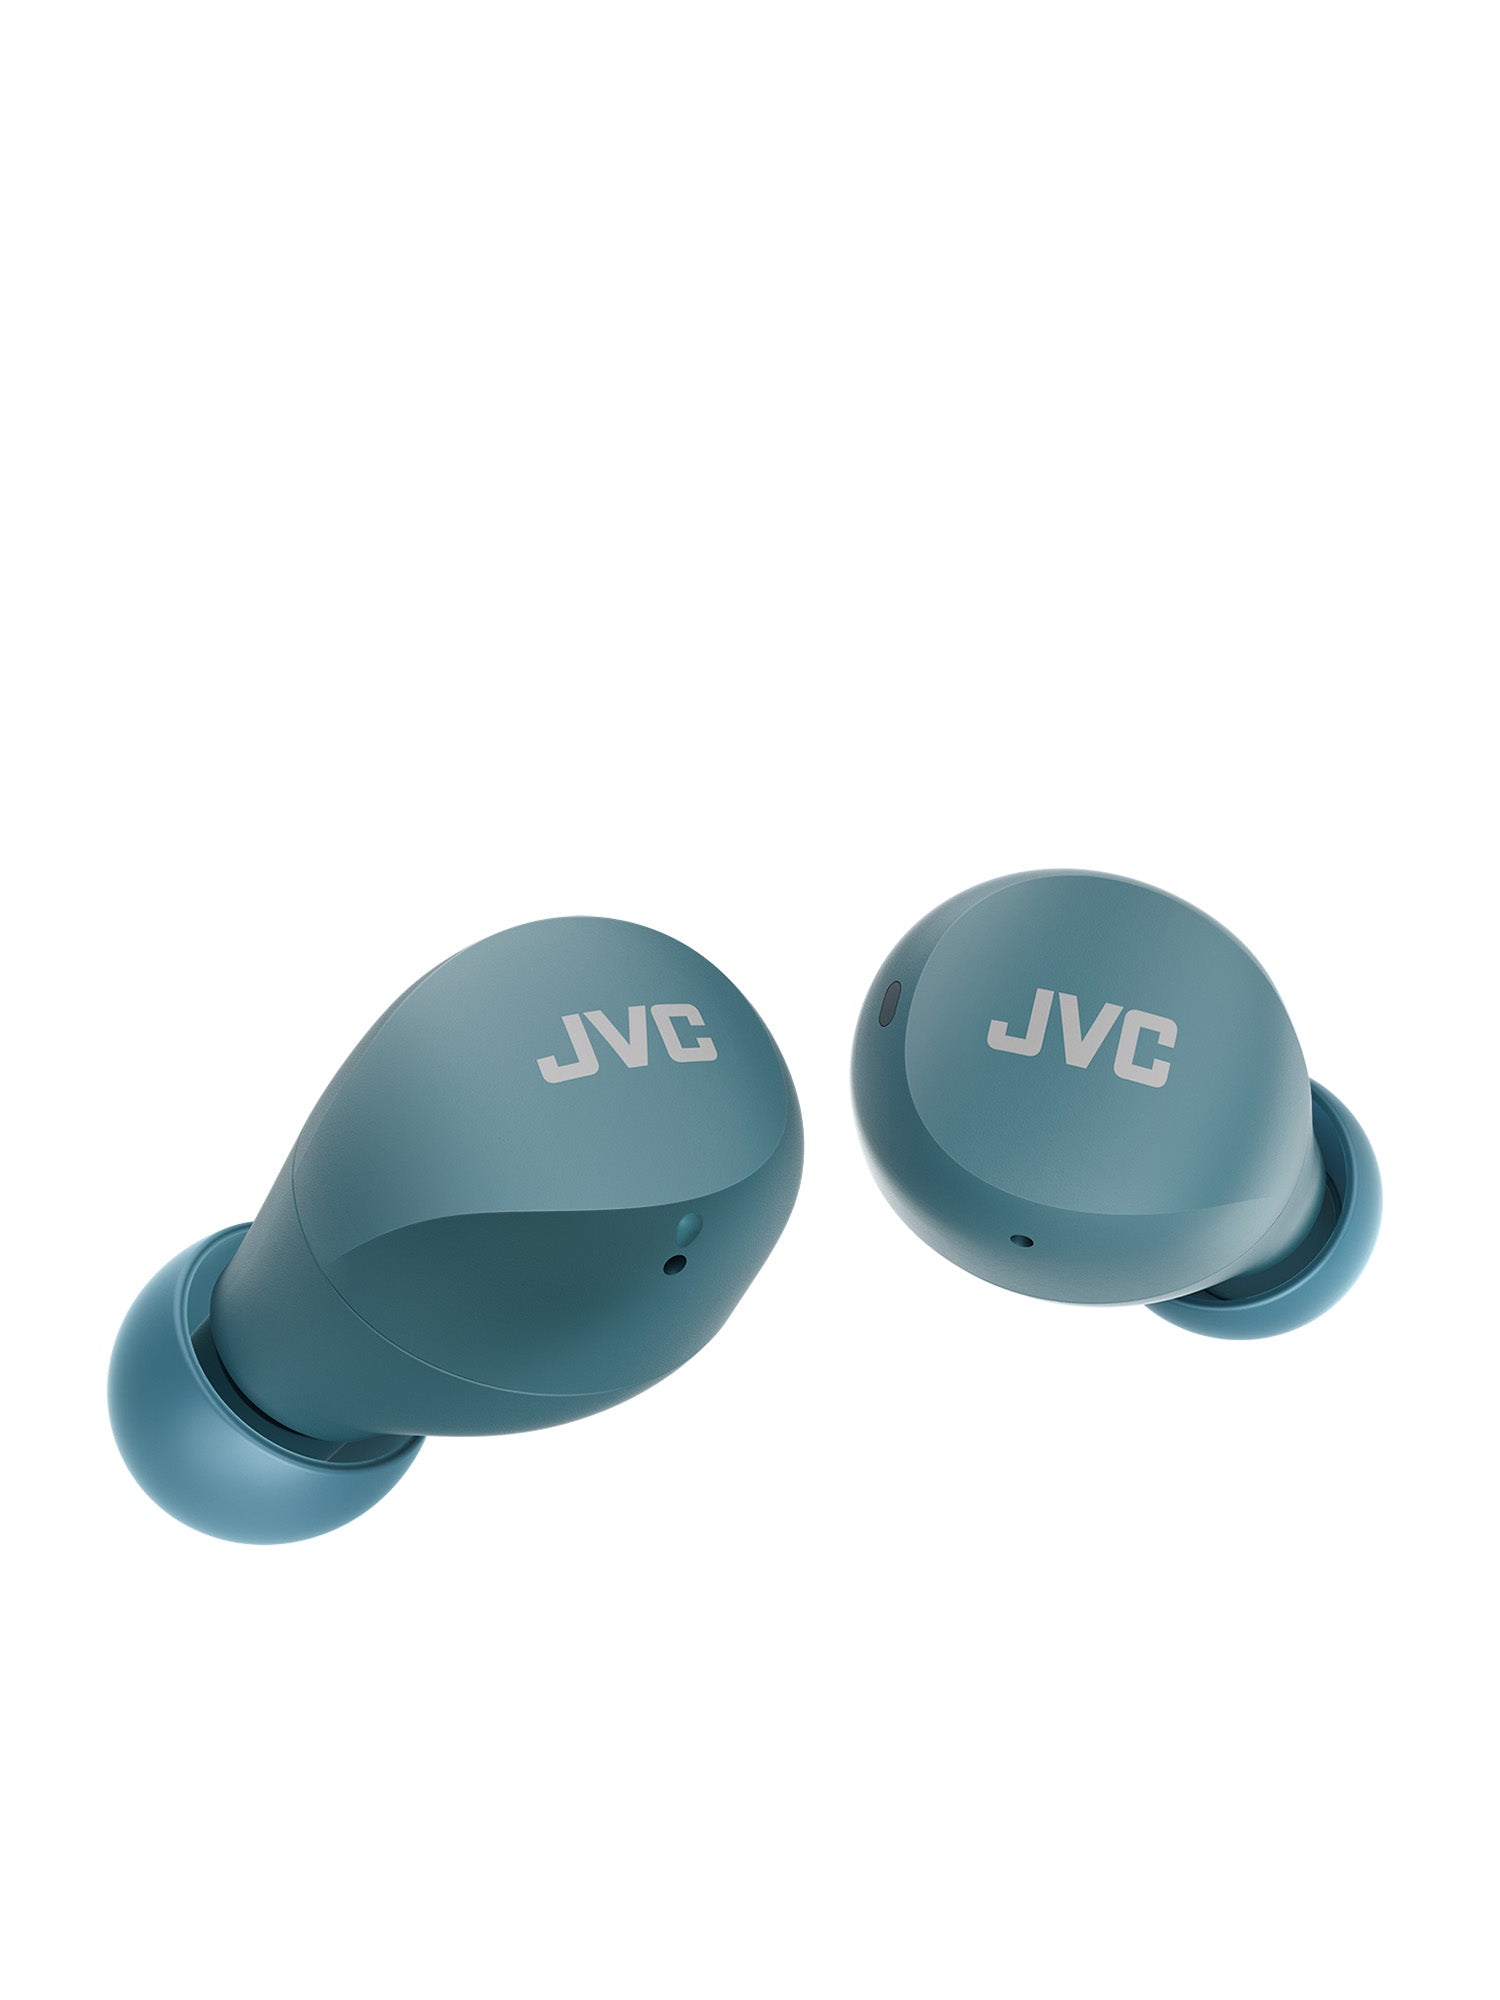 HA-A6T-G in green Gumy mini wireless earbuds by JVC